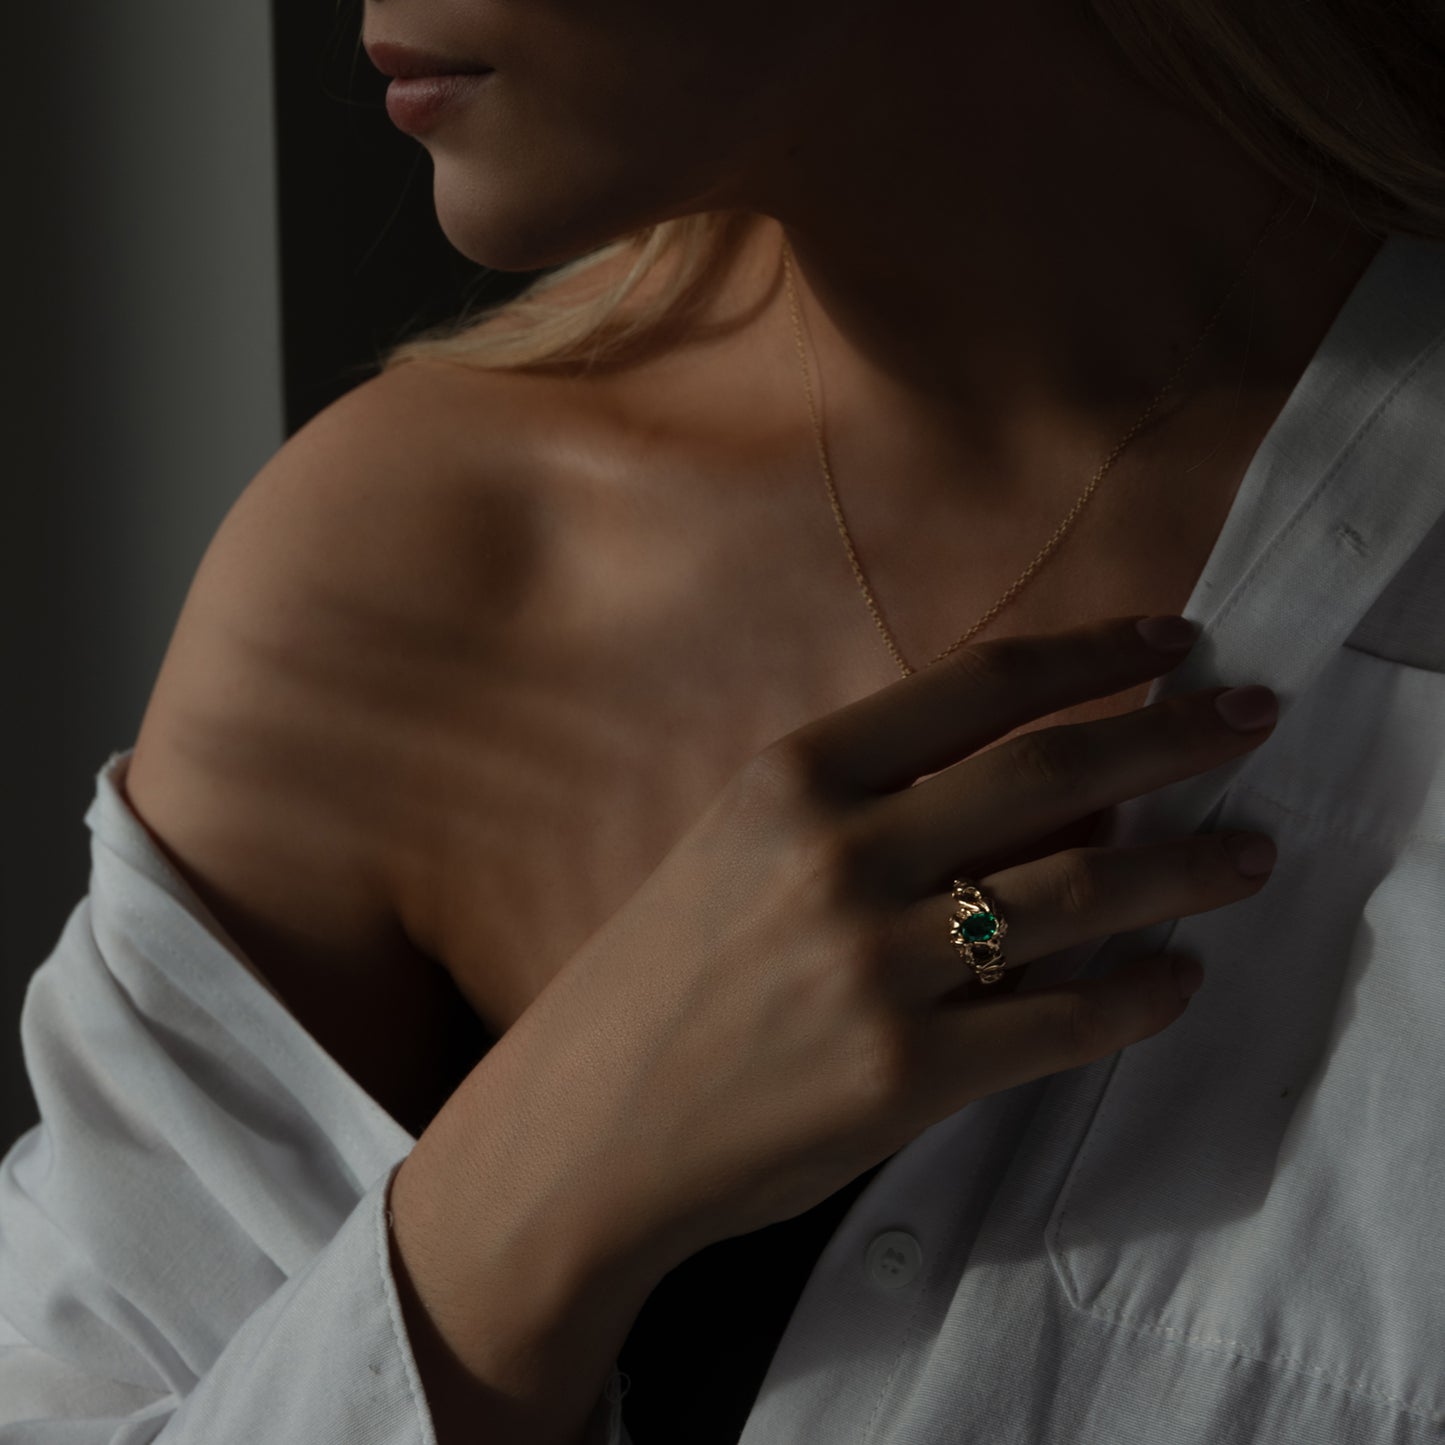 Modelbillede af torso med hånd på brystkassen, og langt lyst hår. På hånden sidder en stor organisk formgivet ring med en grøn smaragd der glimter. Til venstre for er en guld halskæde med lav dybdeskarphed.